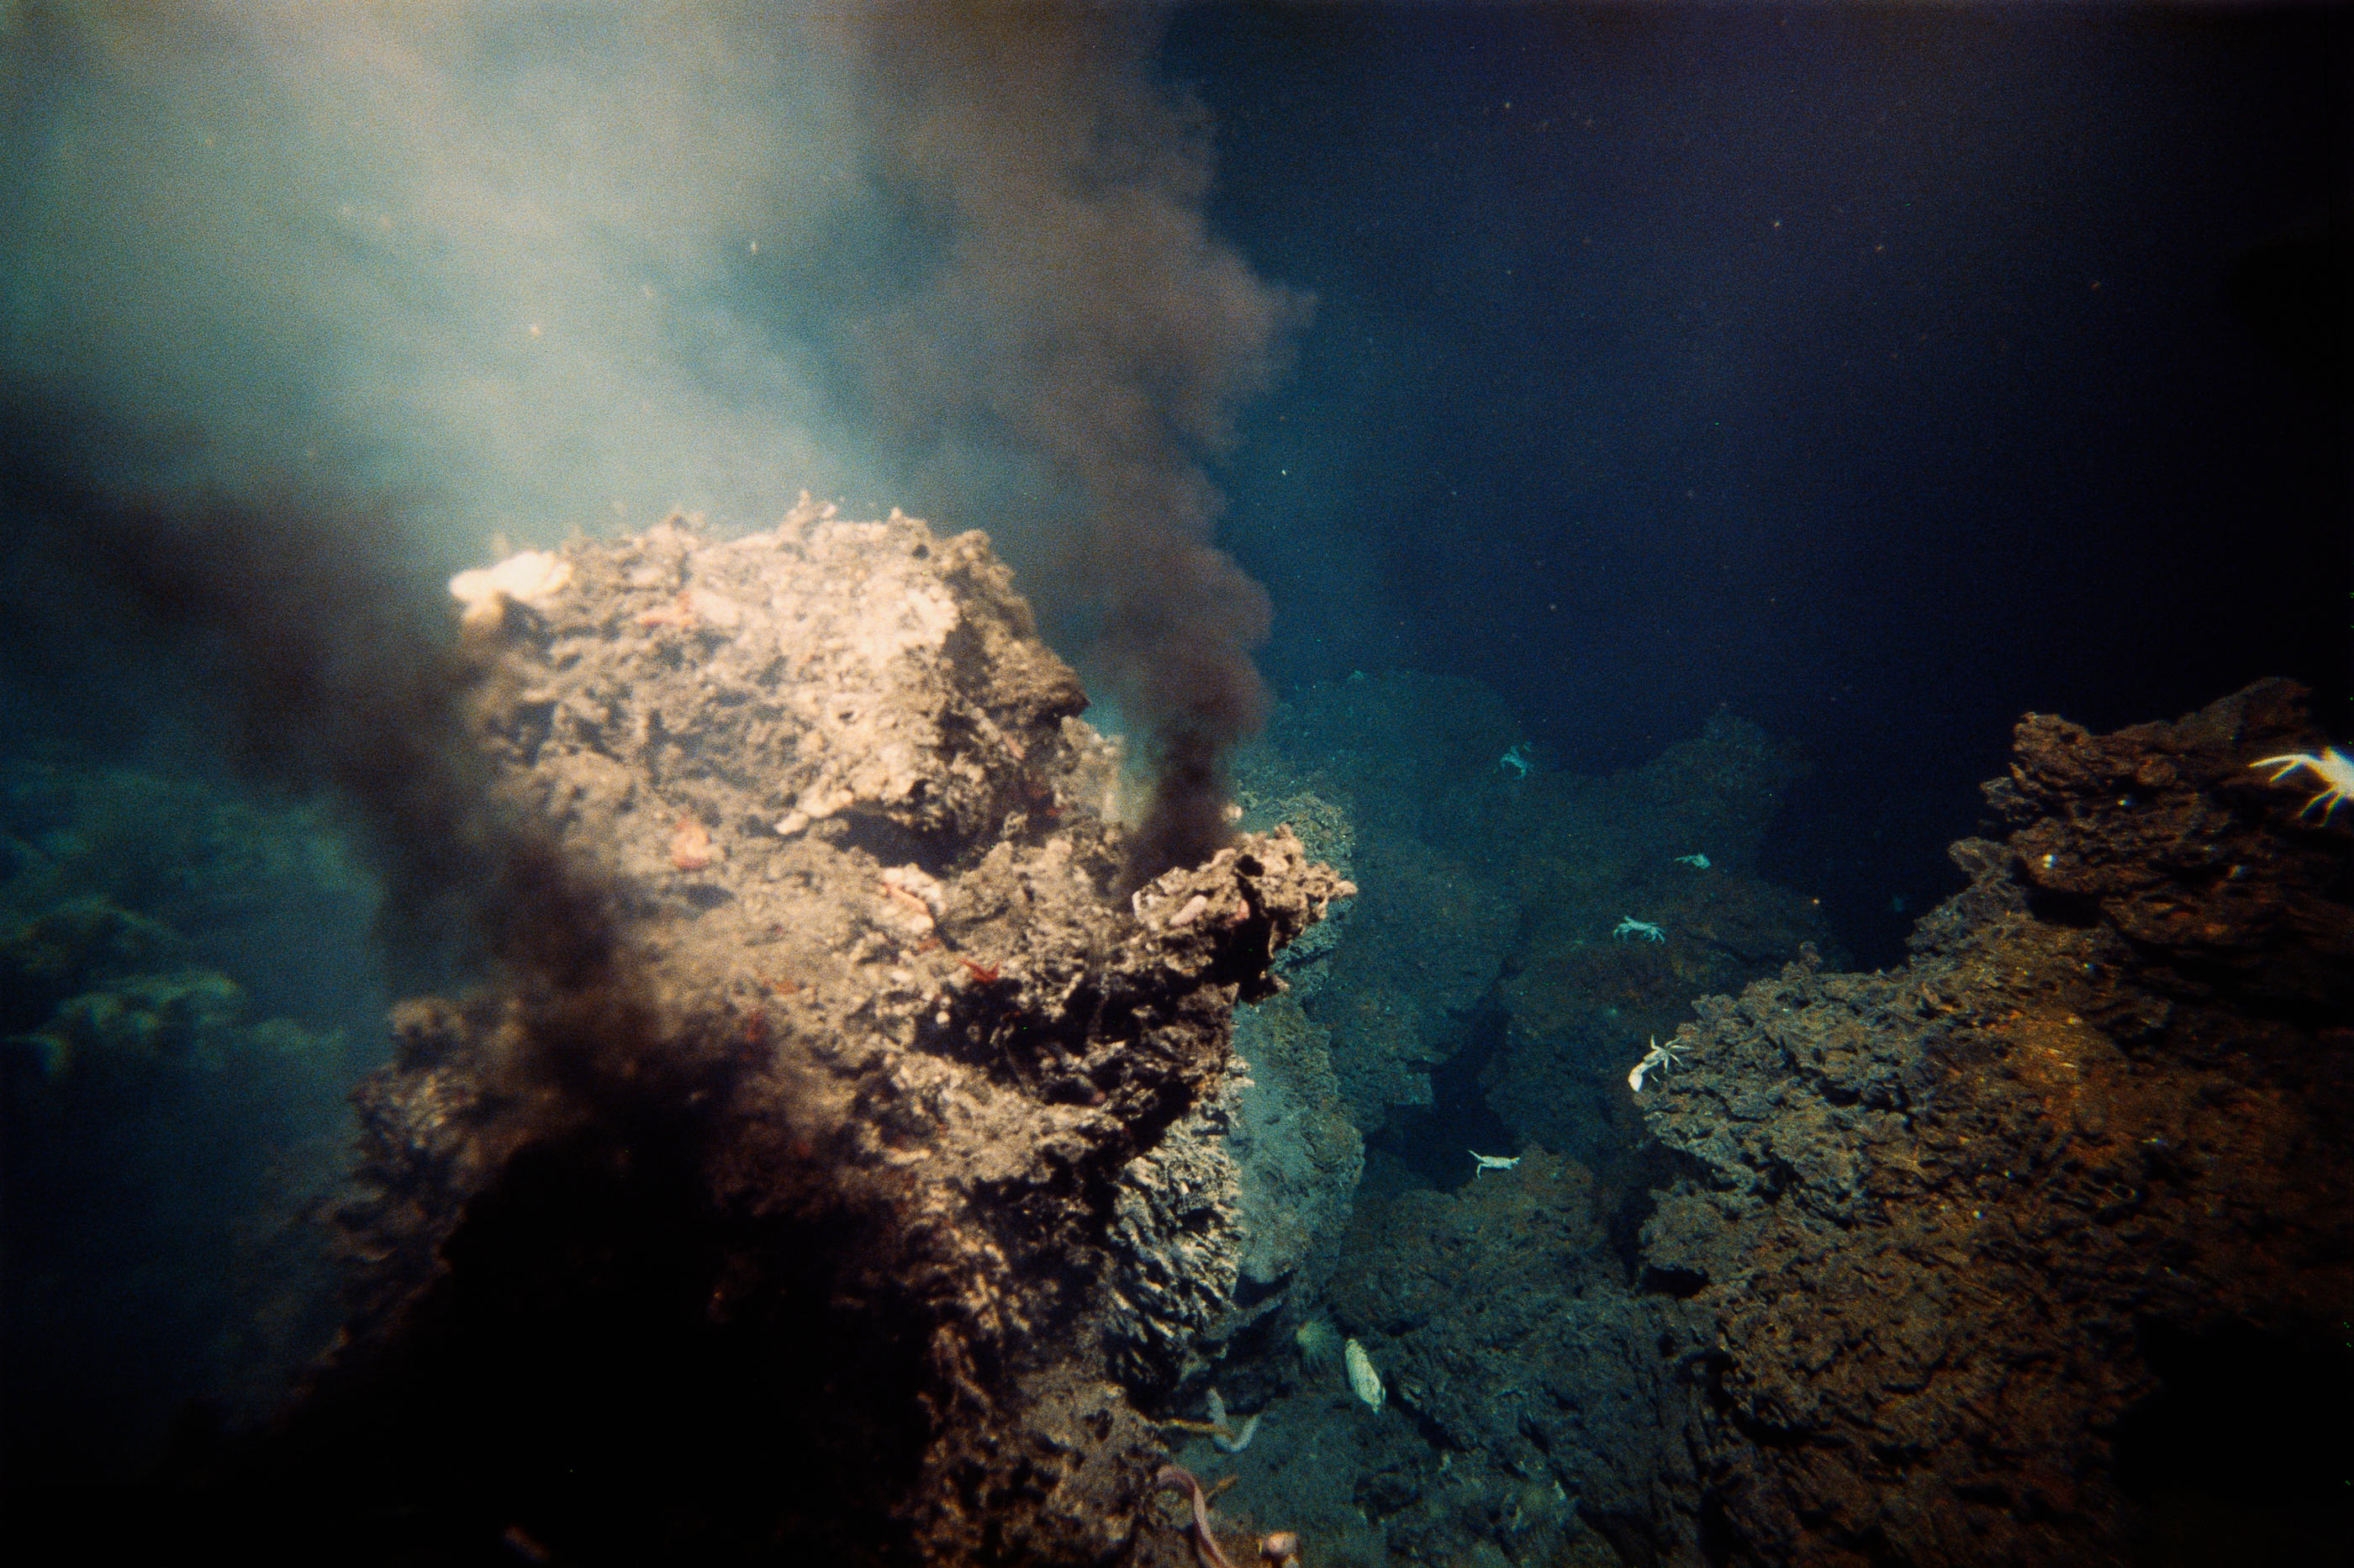 Nos connaissances sur les écosystèmes marins profonds pourraient être bouleversées par cette découverte. Photo Istock